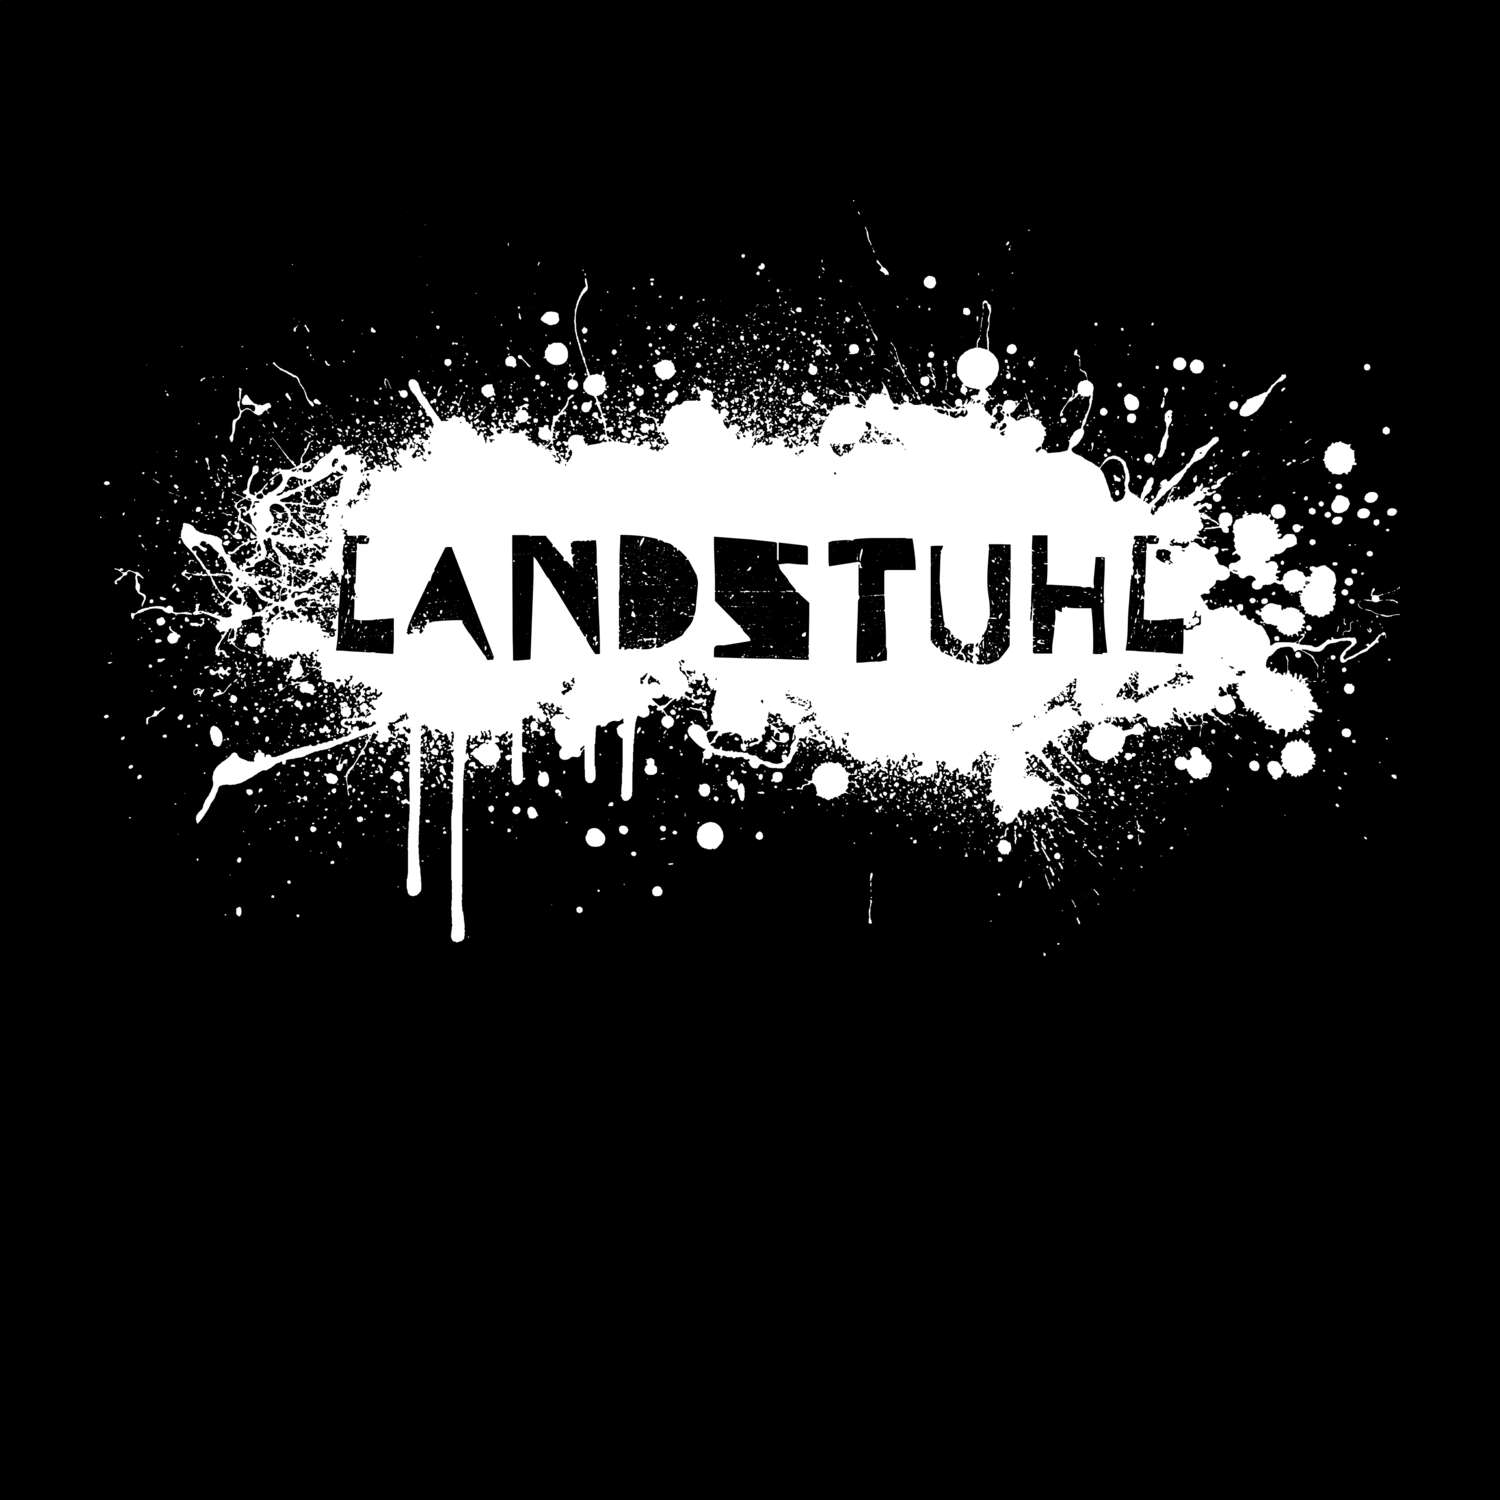 Landstuhl T-Shirt »Paint Splash Punk«